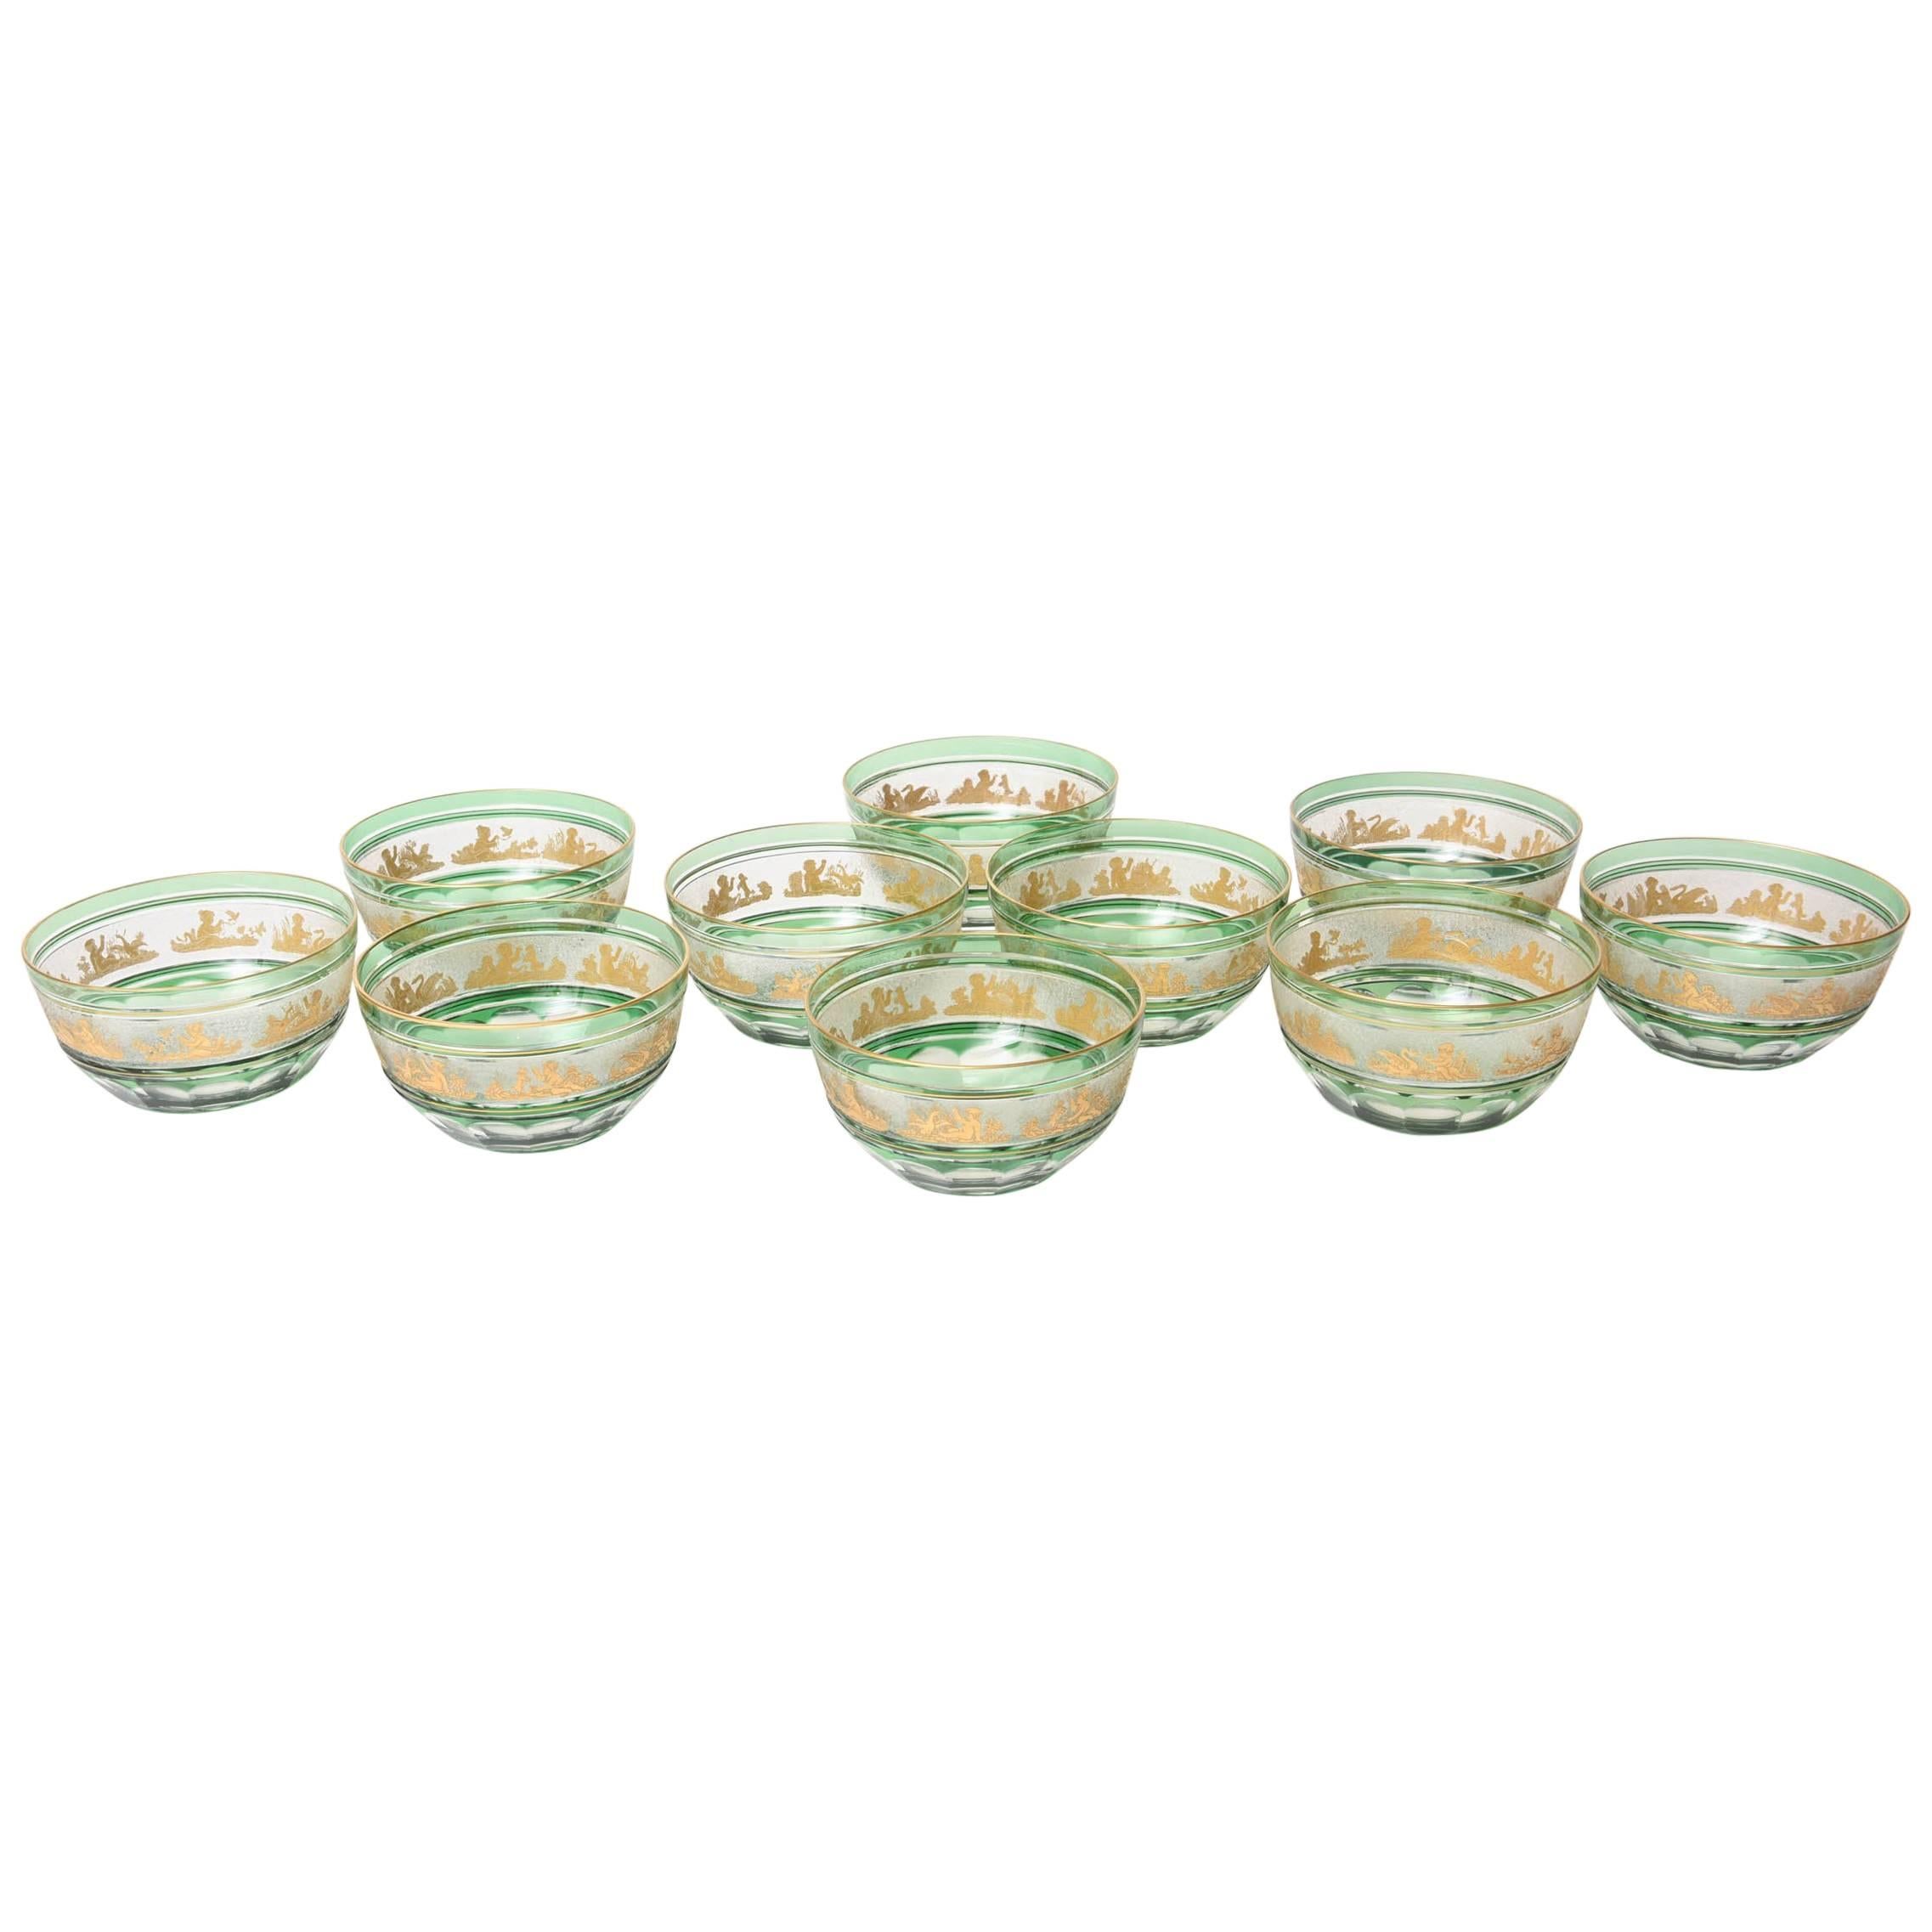 Set of Ten Green Glass Gilt Dessert Bowls, Val Saint Lambert, circa 1920s